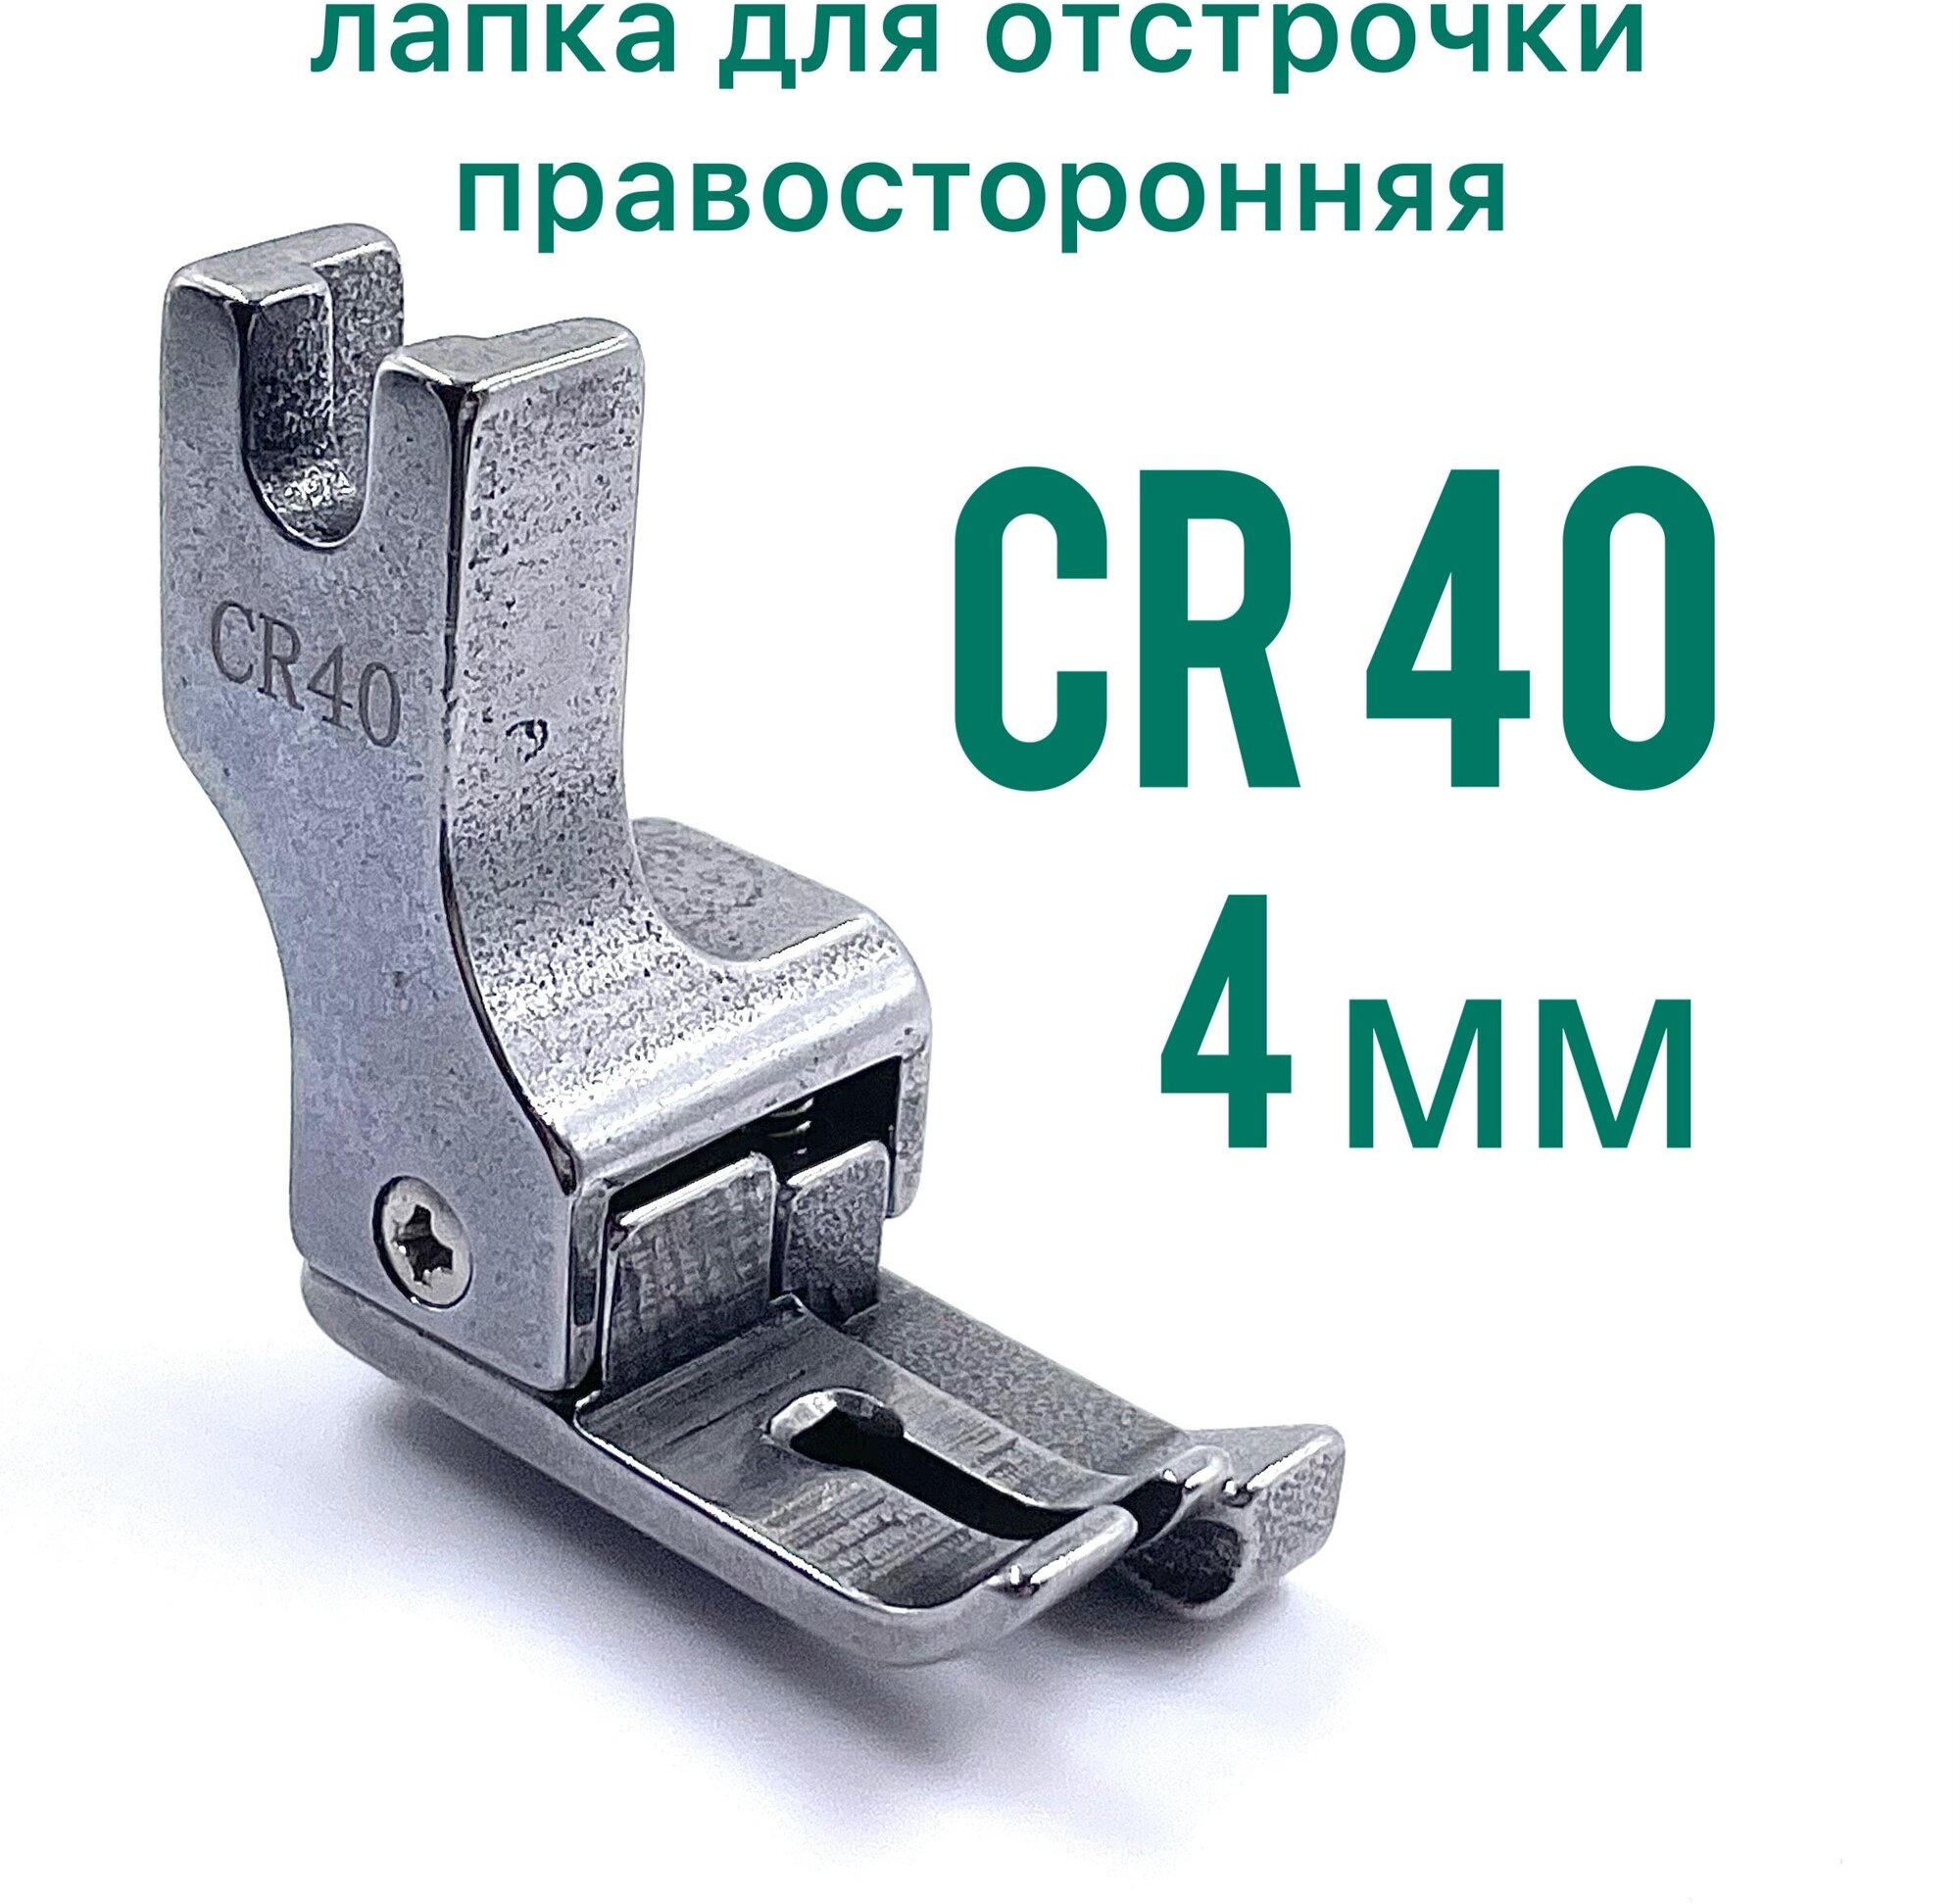 Лапка CR40 /4 мм для отстрочки правосторонняя для прямострочной промышленной швейной машины